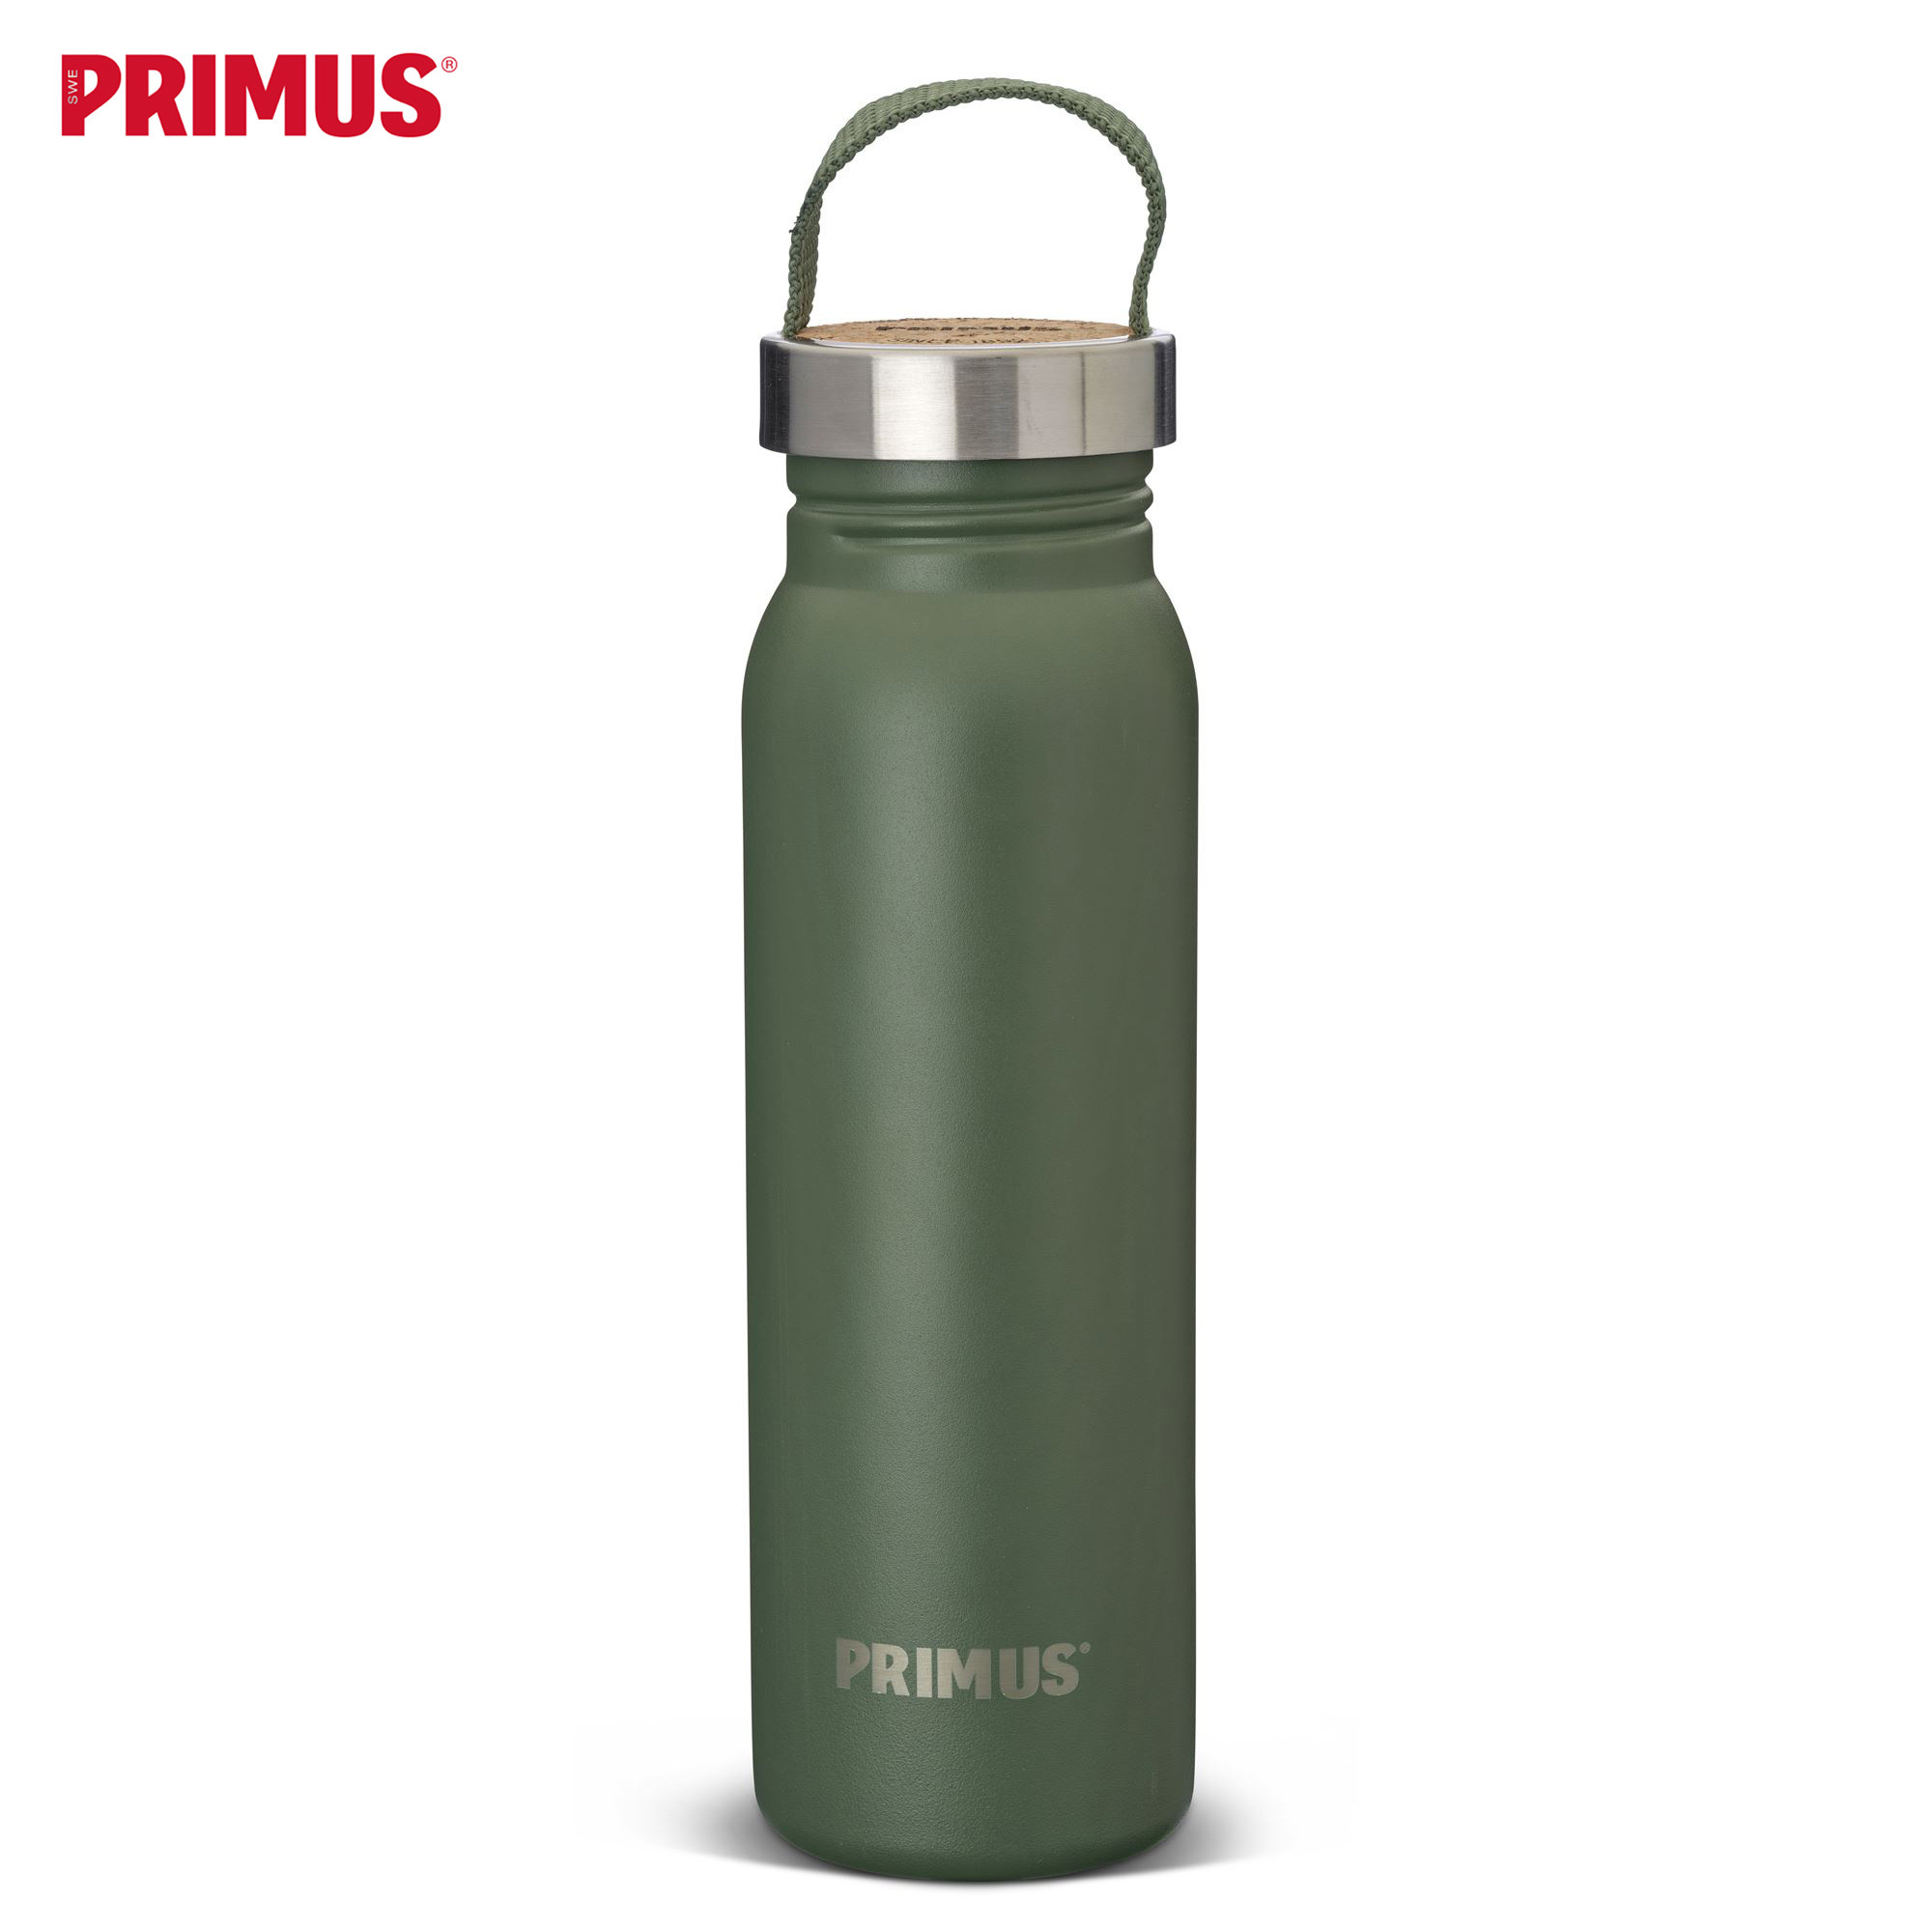 Primus Klunken Bottle 0.7 Ltr.